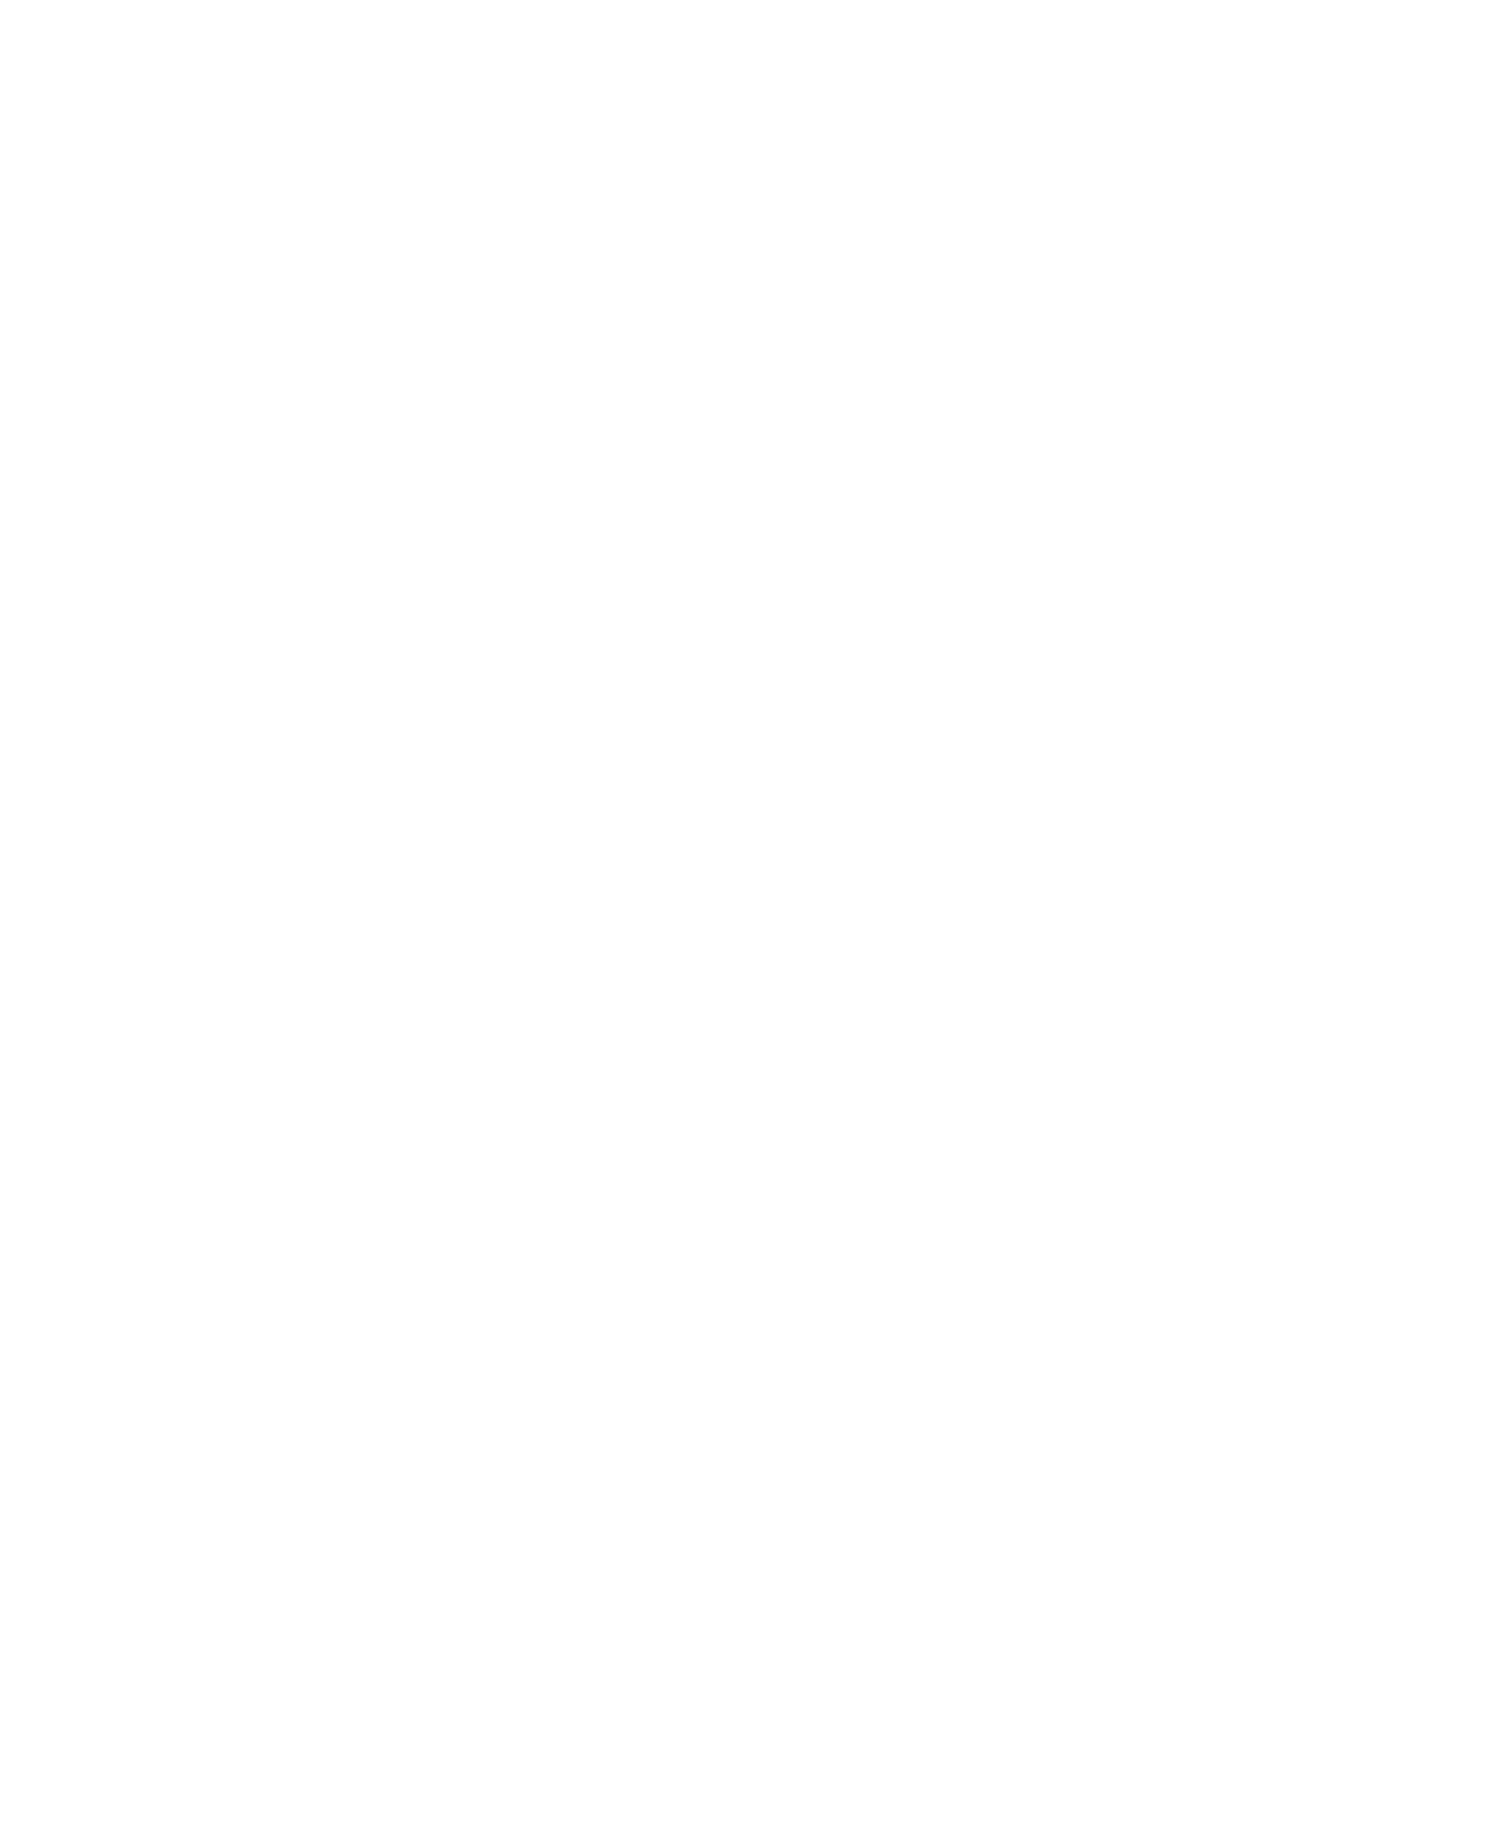 Tierpsychologie Bad Saarow